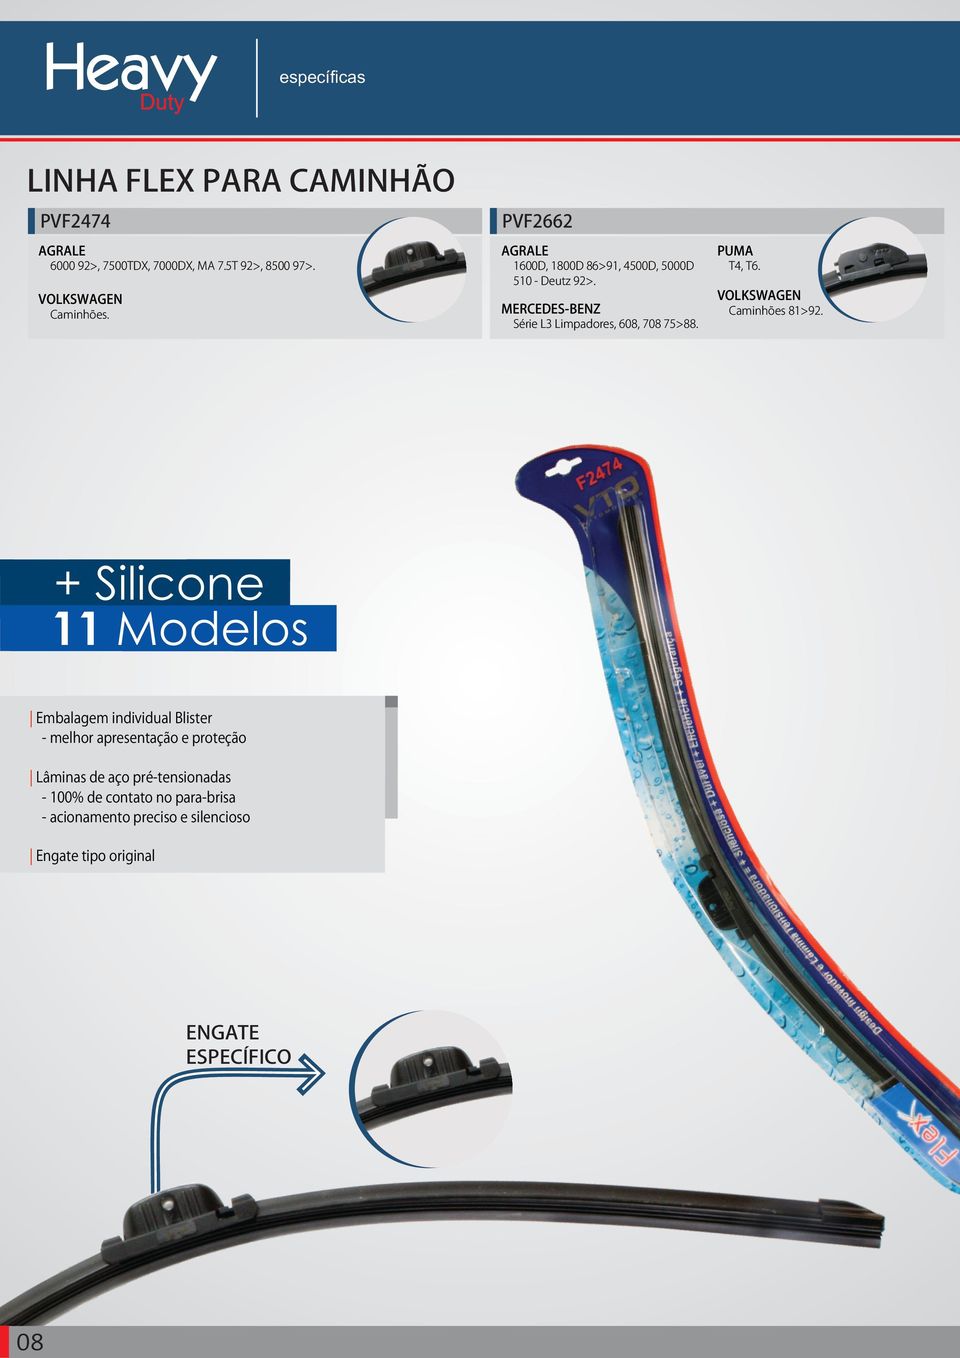 + Silicone 11 Modelos Embalagem individual Blister melhor apresentação e proteção Lâminas de aço prétensionadas 100%